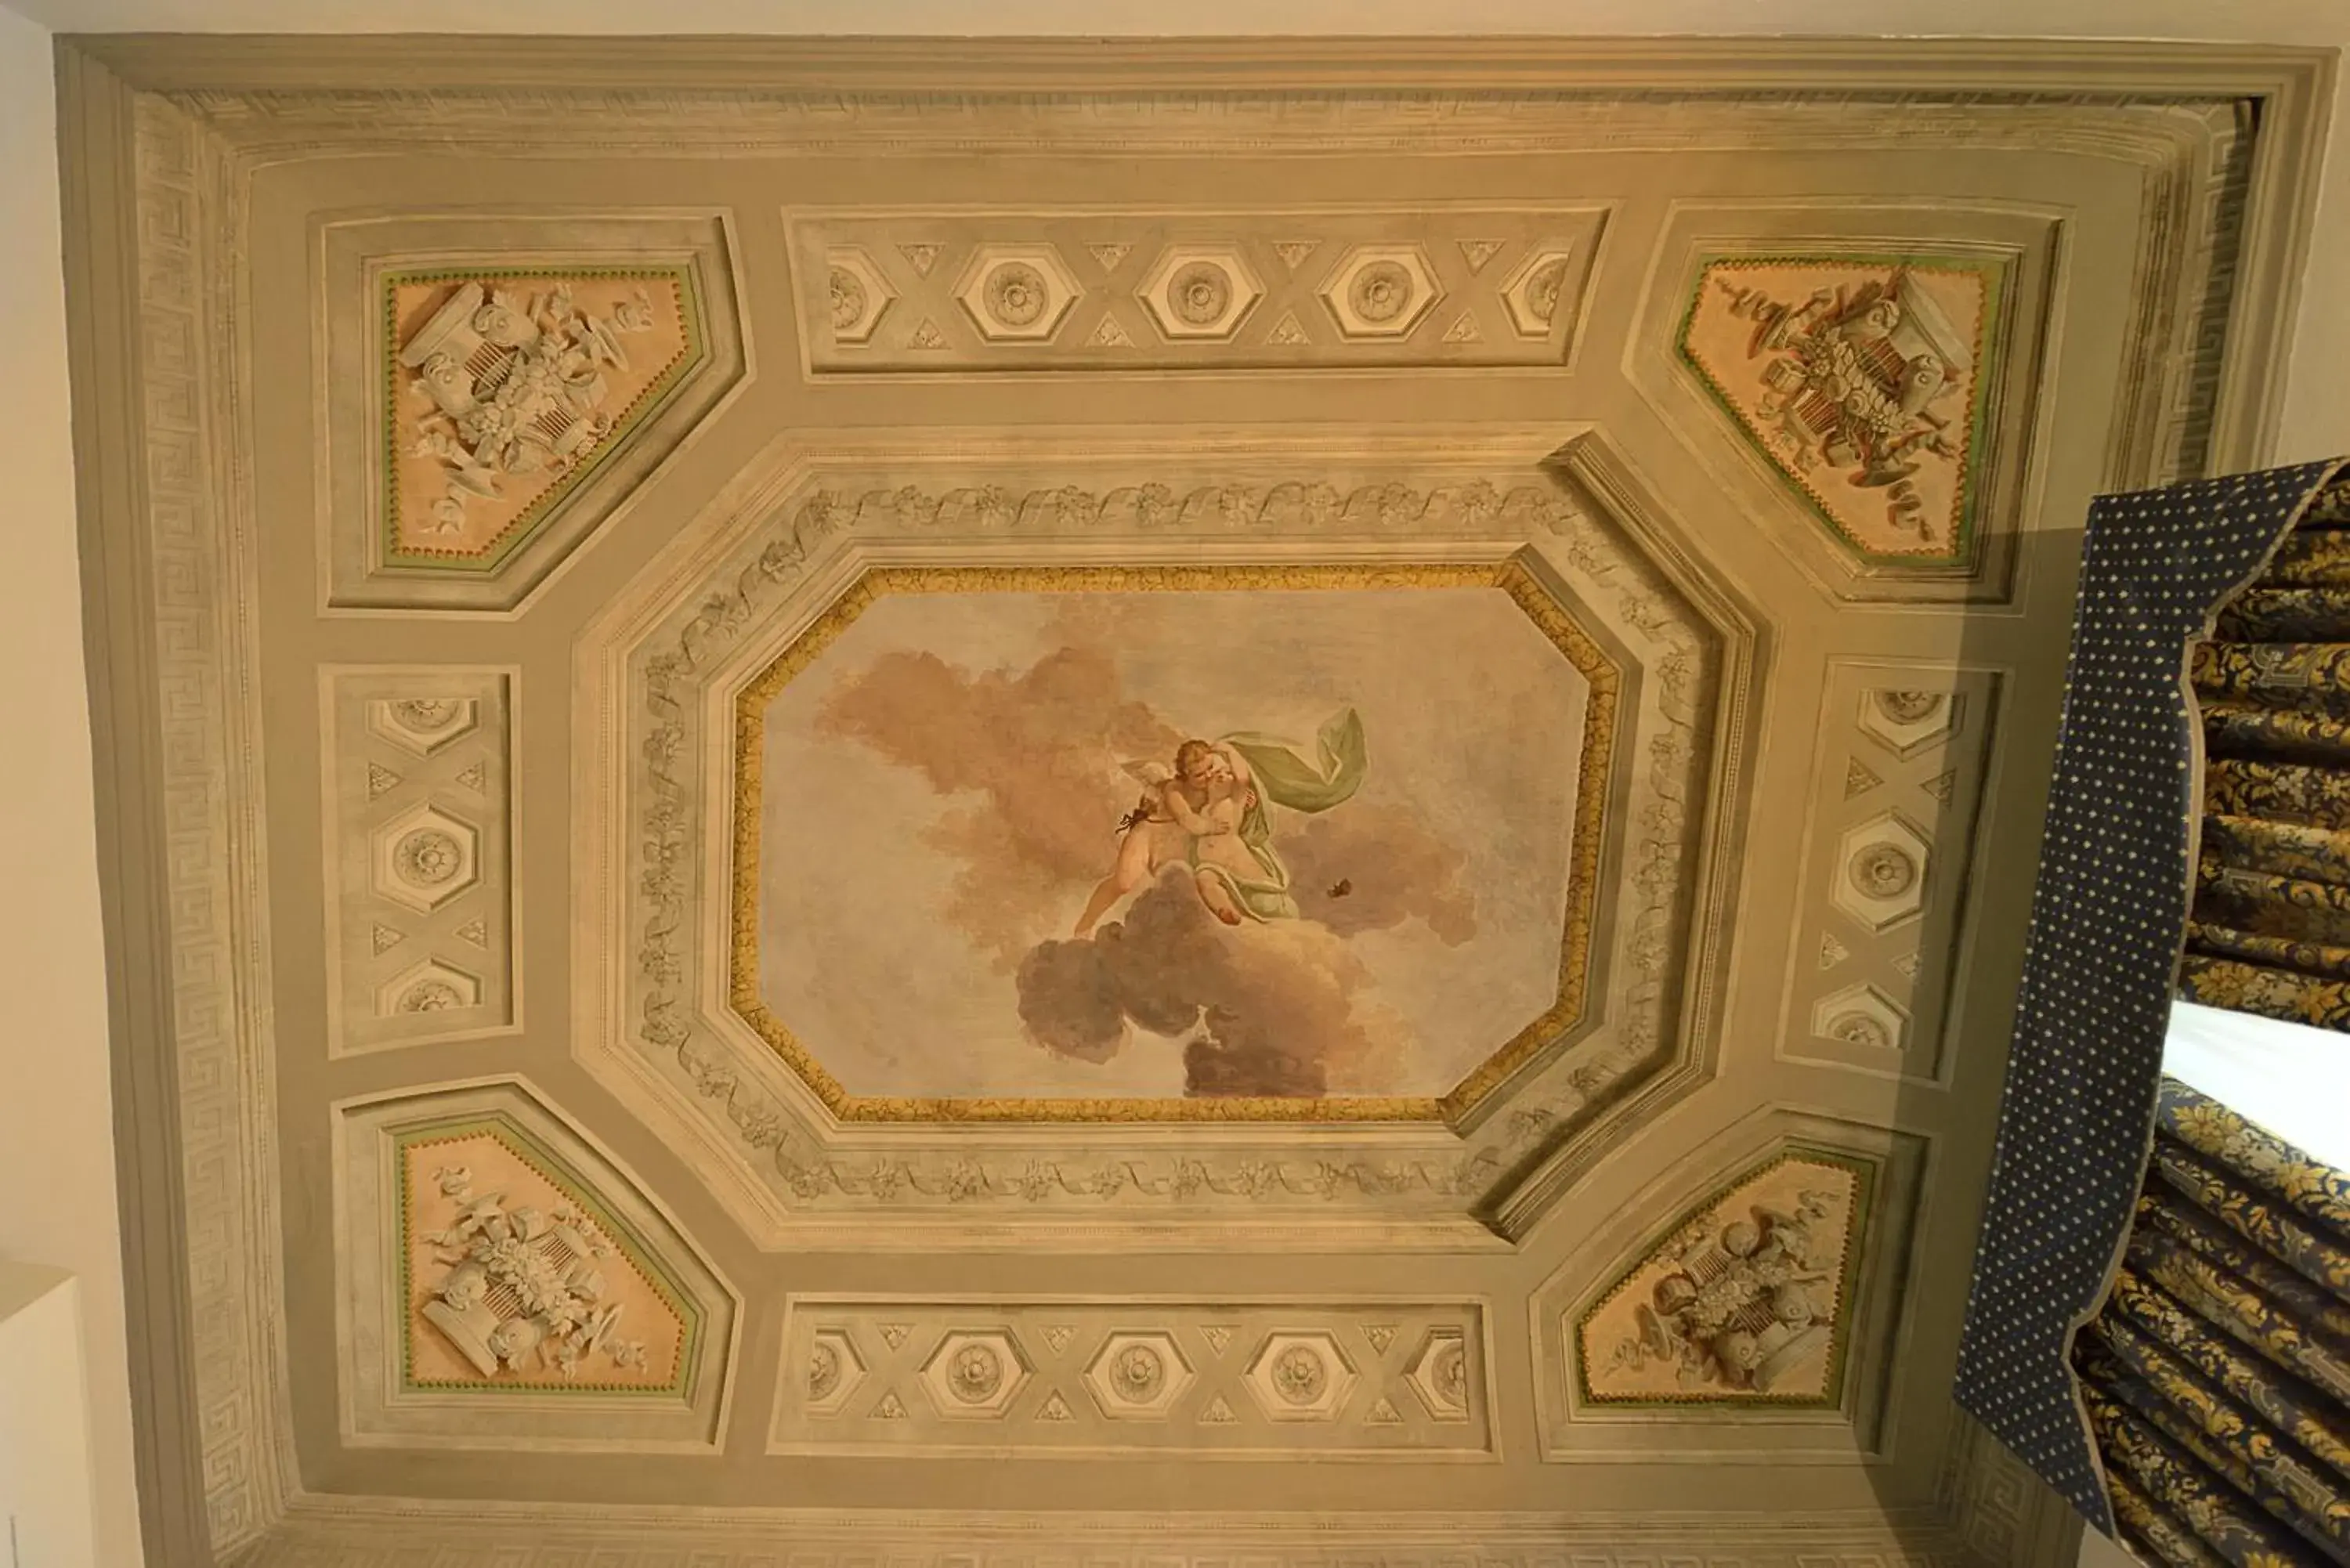 Decorative detail, Logo/Certificate/Sign/Award in Palazzo Guicciardini